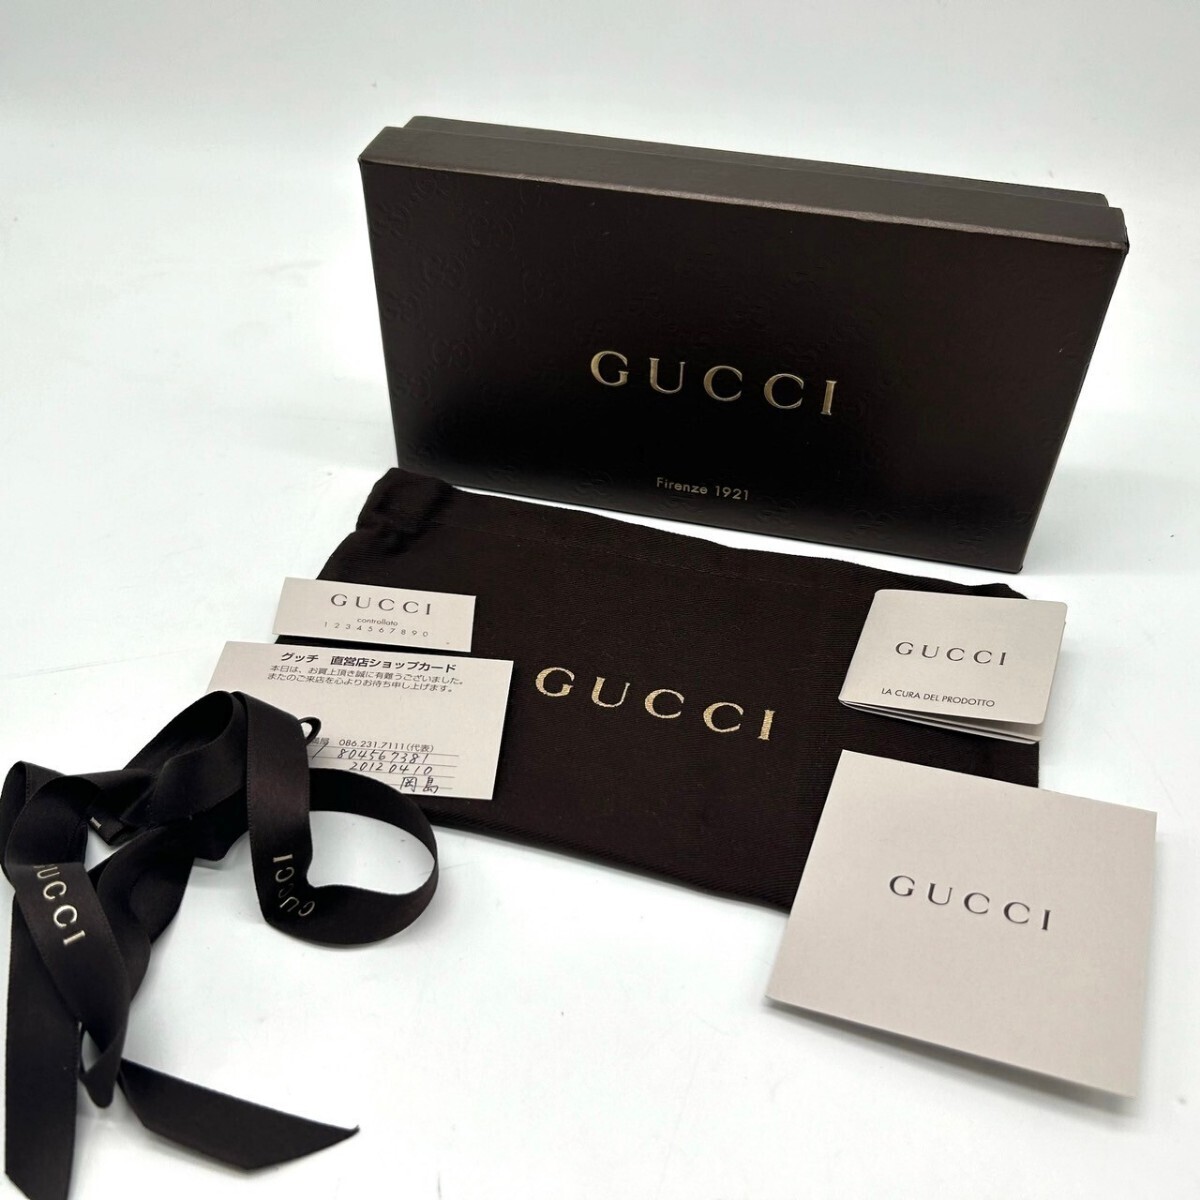 [ прекрасный товар / с коробкой ] Gucci GUCCI длинный кошелек раунд застежка-молния питон so- сигнал кисточка мужской женский кожа натуральная кожа длинный бумажник 